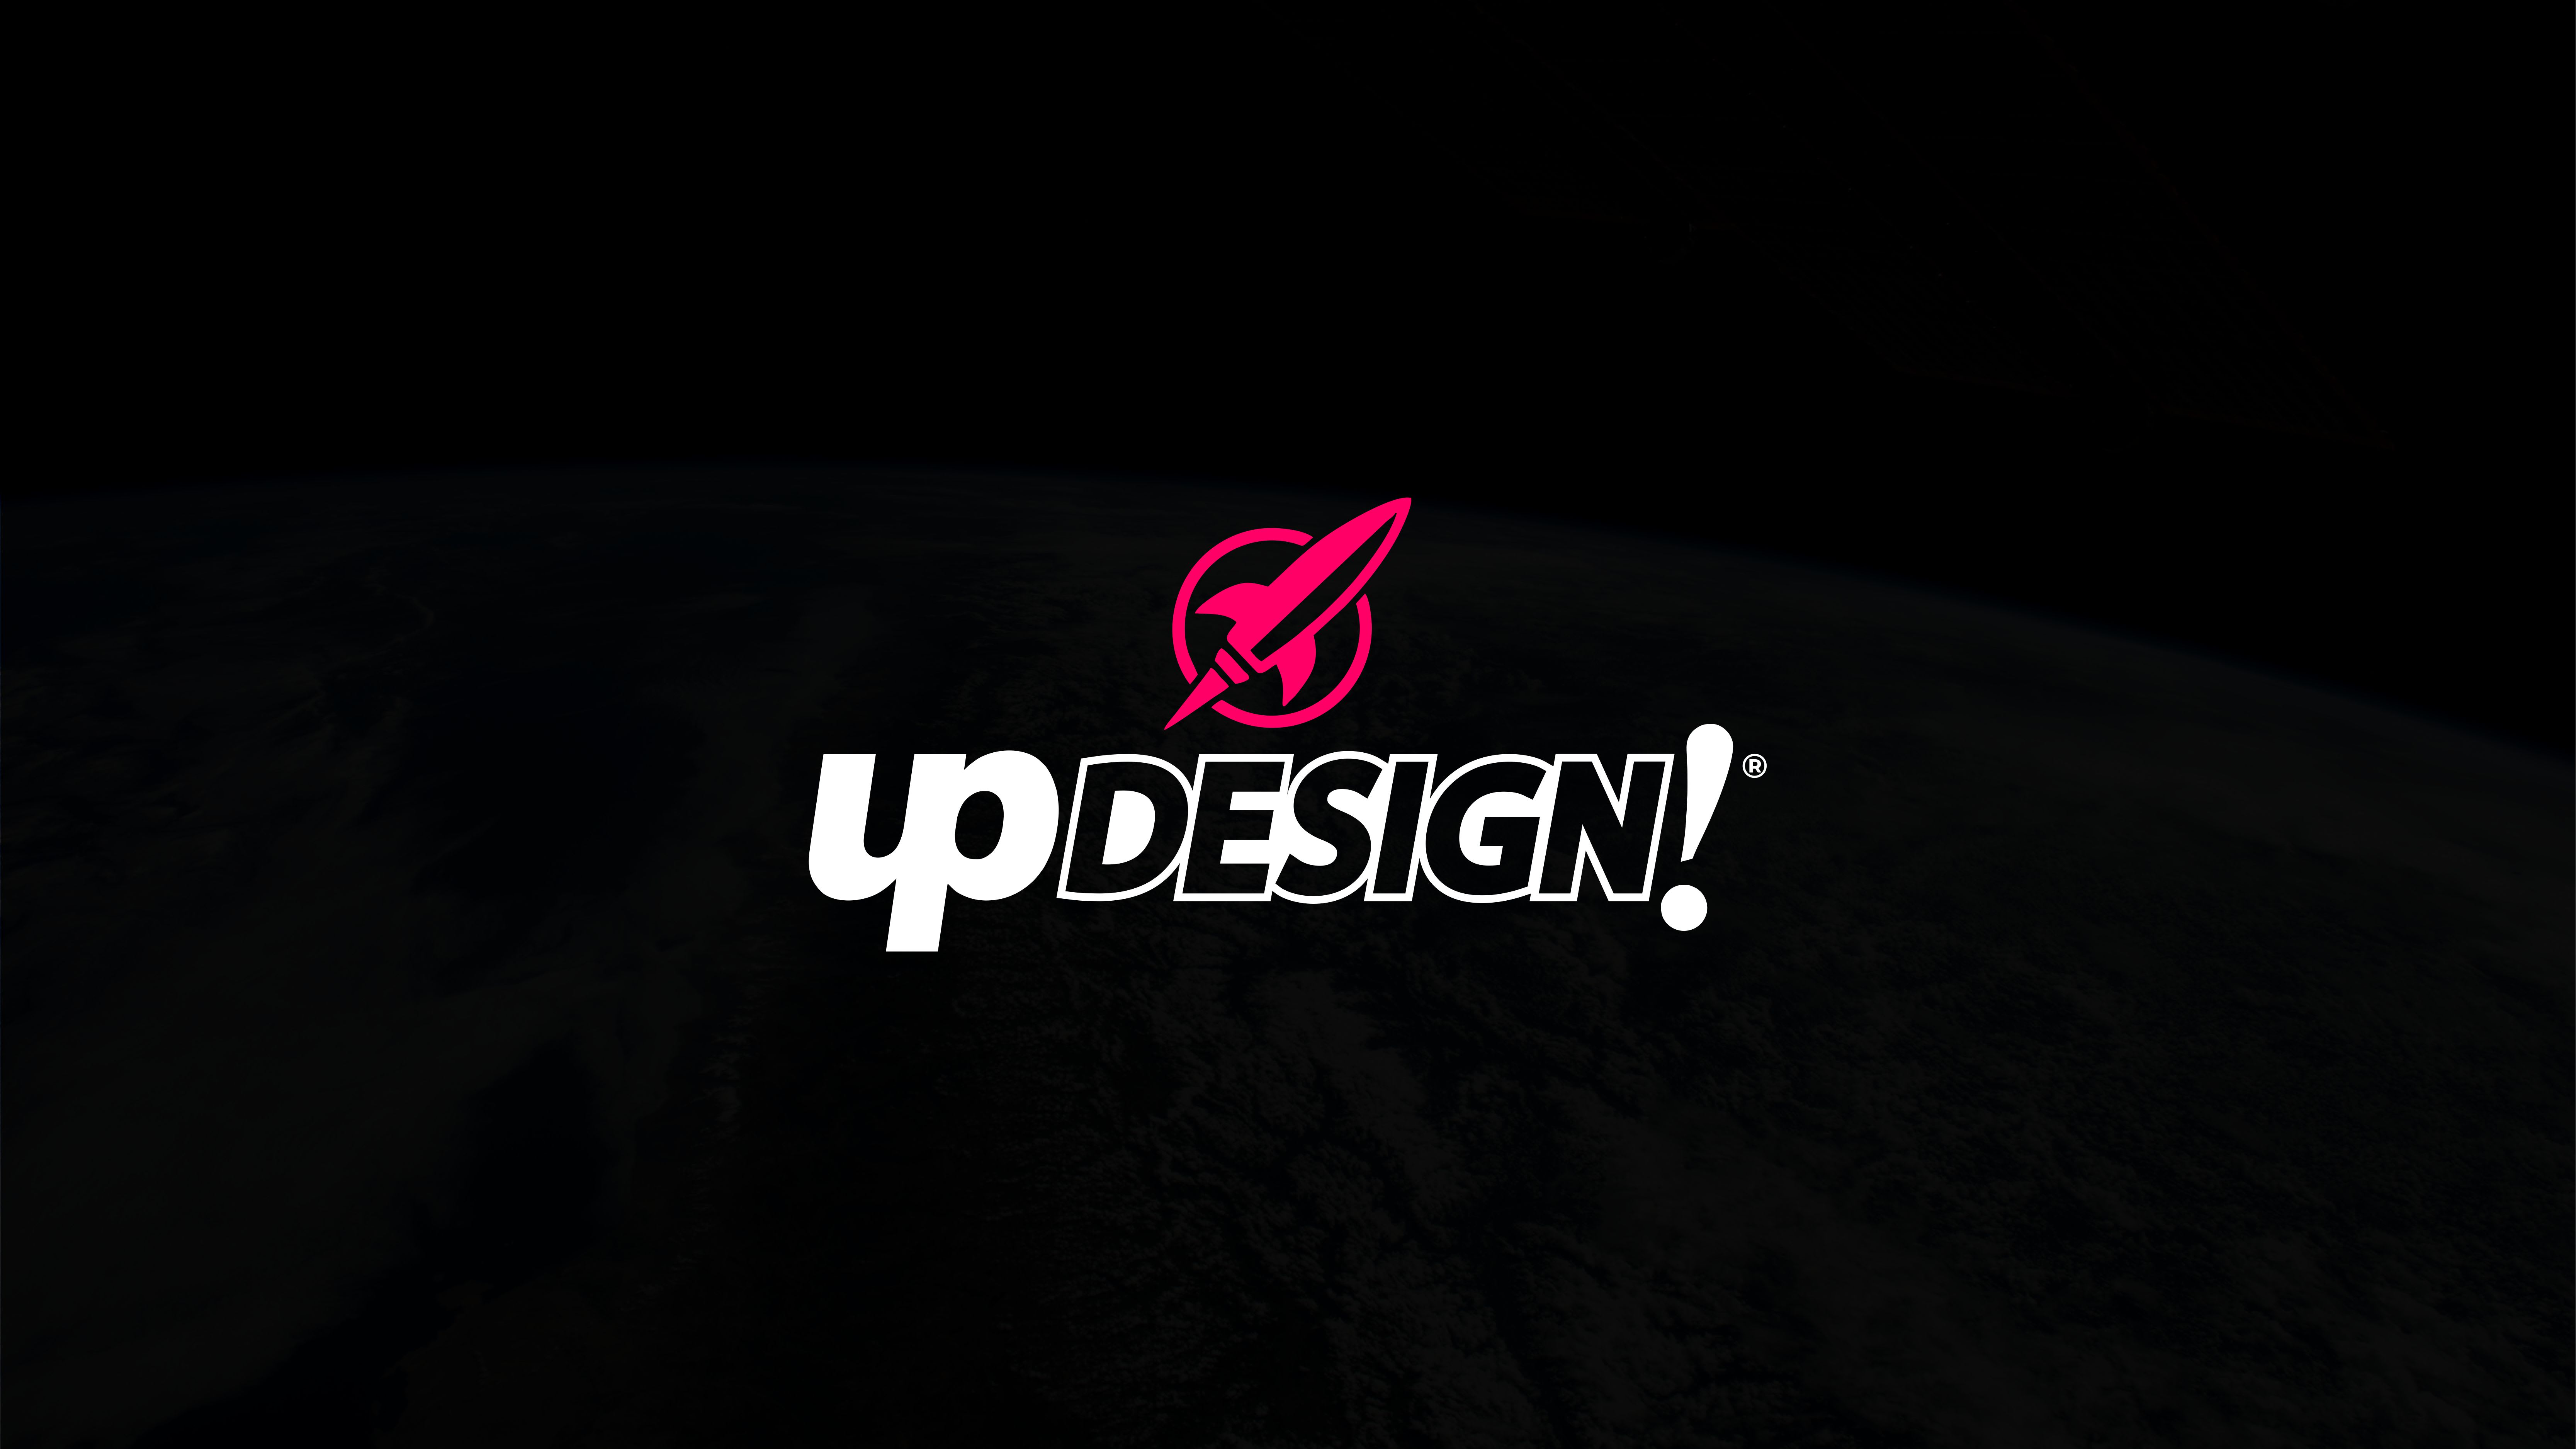 UP Design!